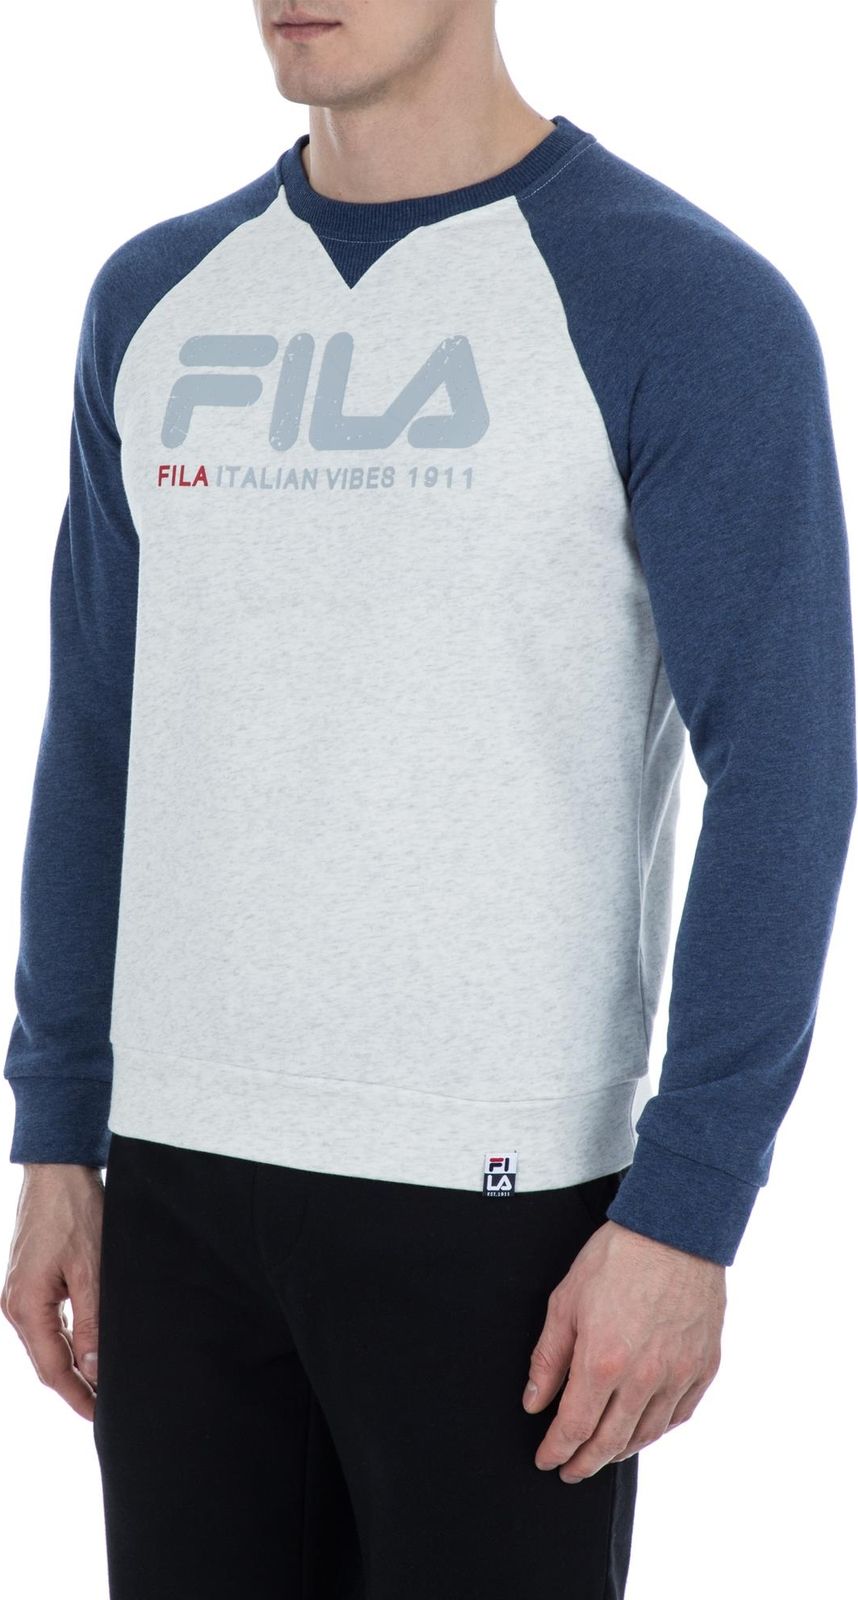   Fila Men's jumper, : -. S19AFLJUM03-1A.  XL (52)